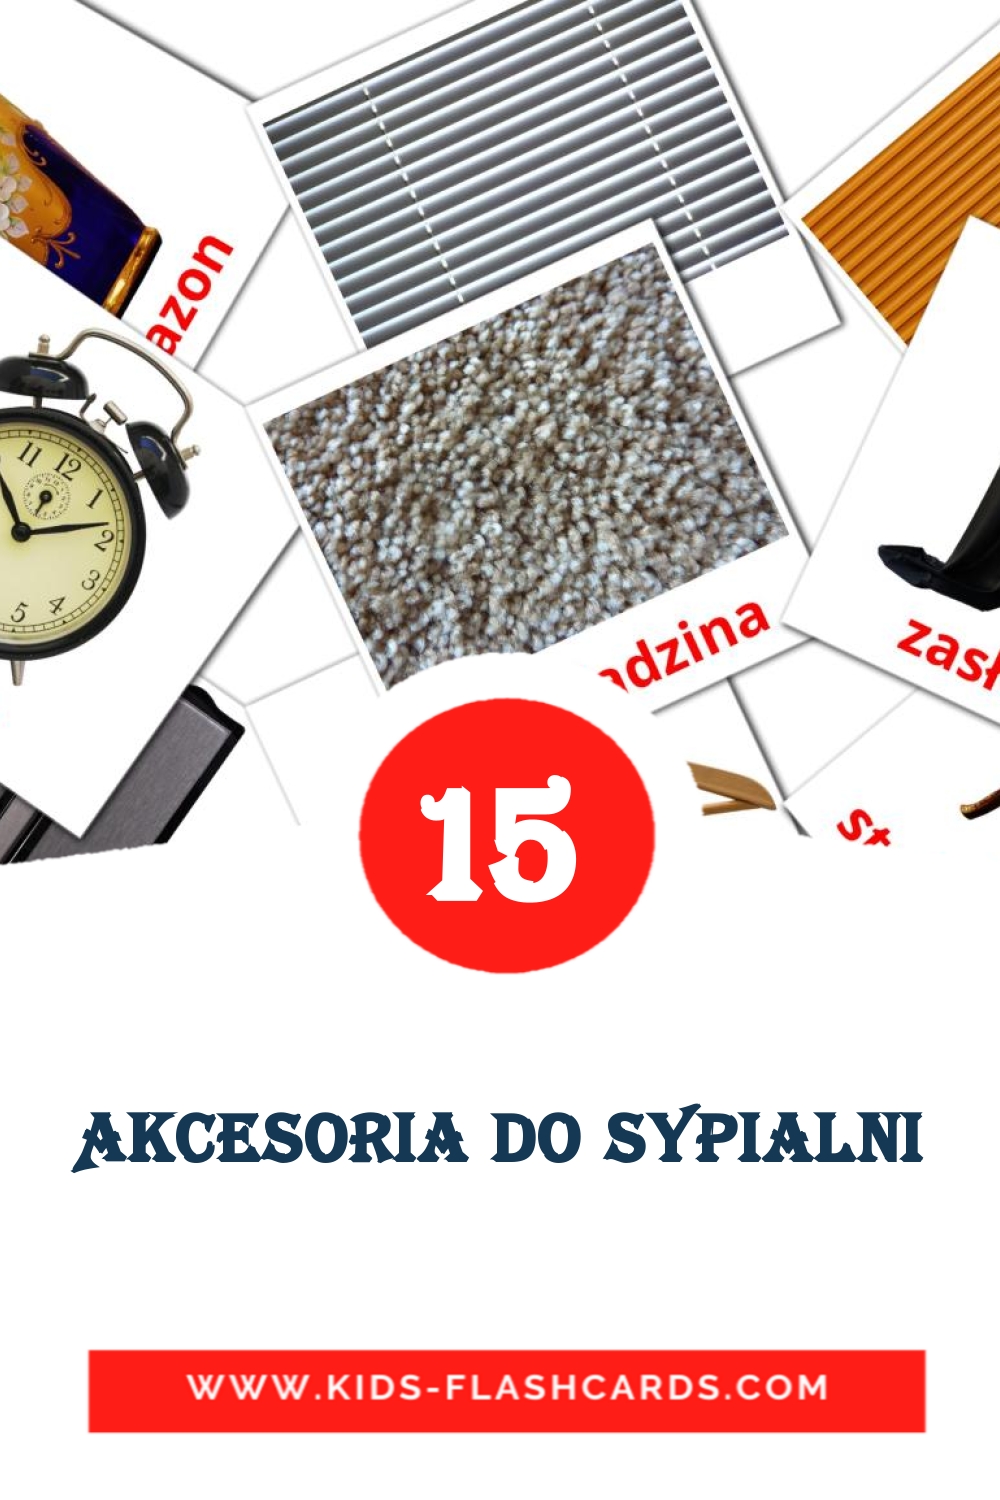 15 carte illustrate di Akcesoria do Sypialni per la scuola materna in polacco